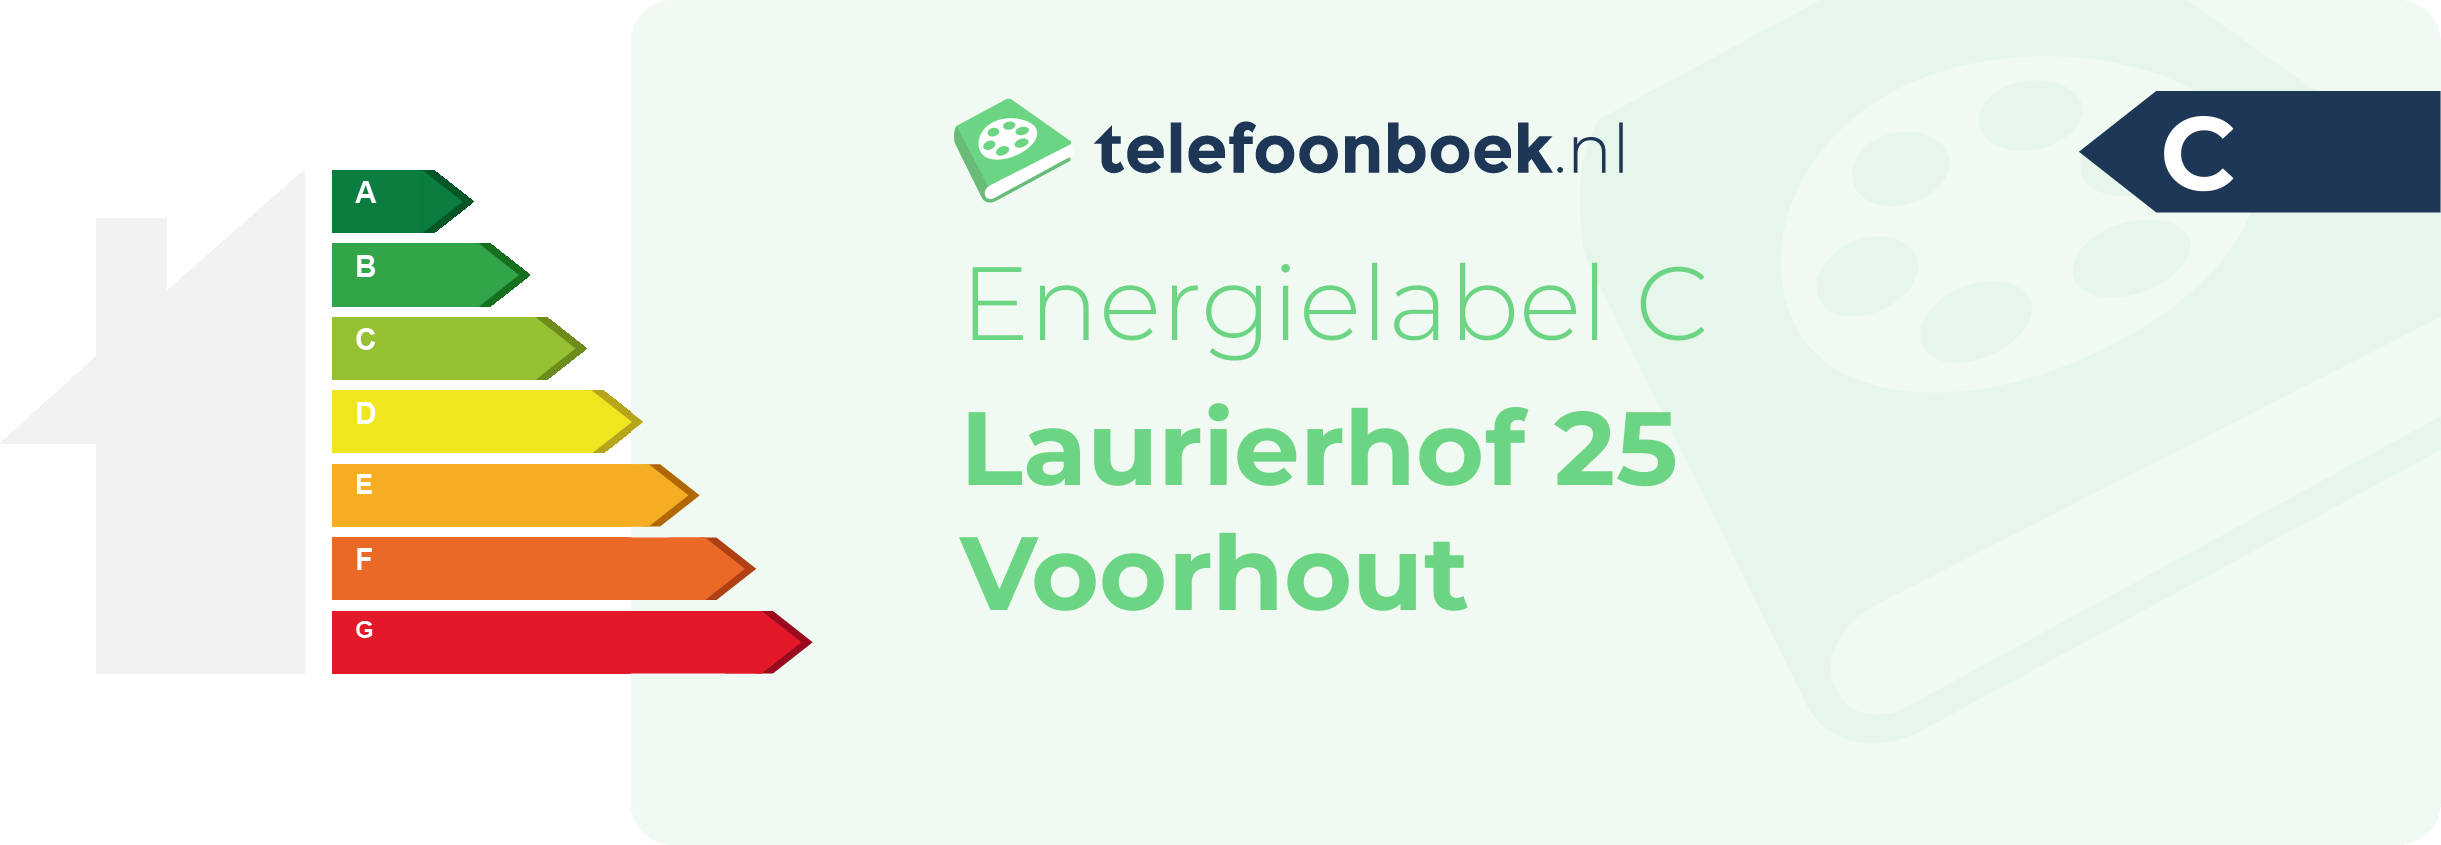 Energielabel Laurierhof 25 Voorhout